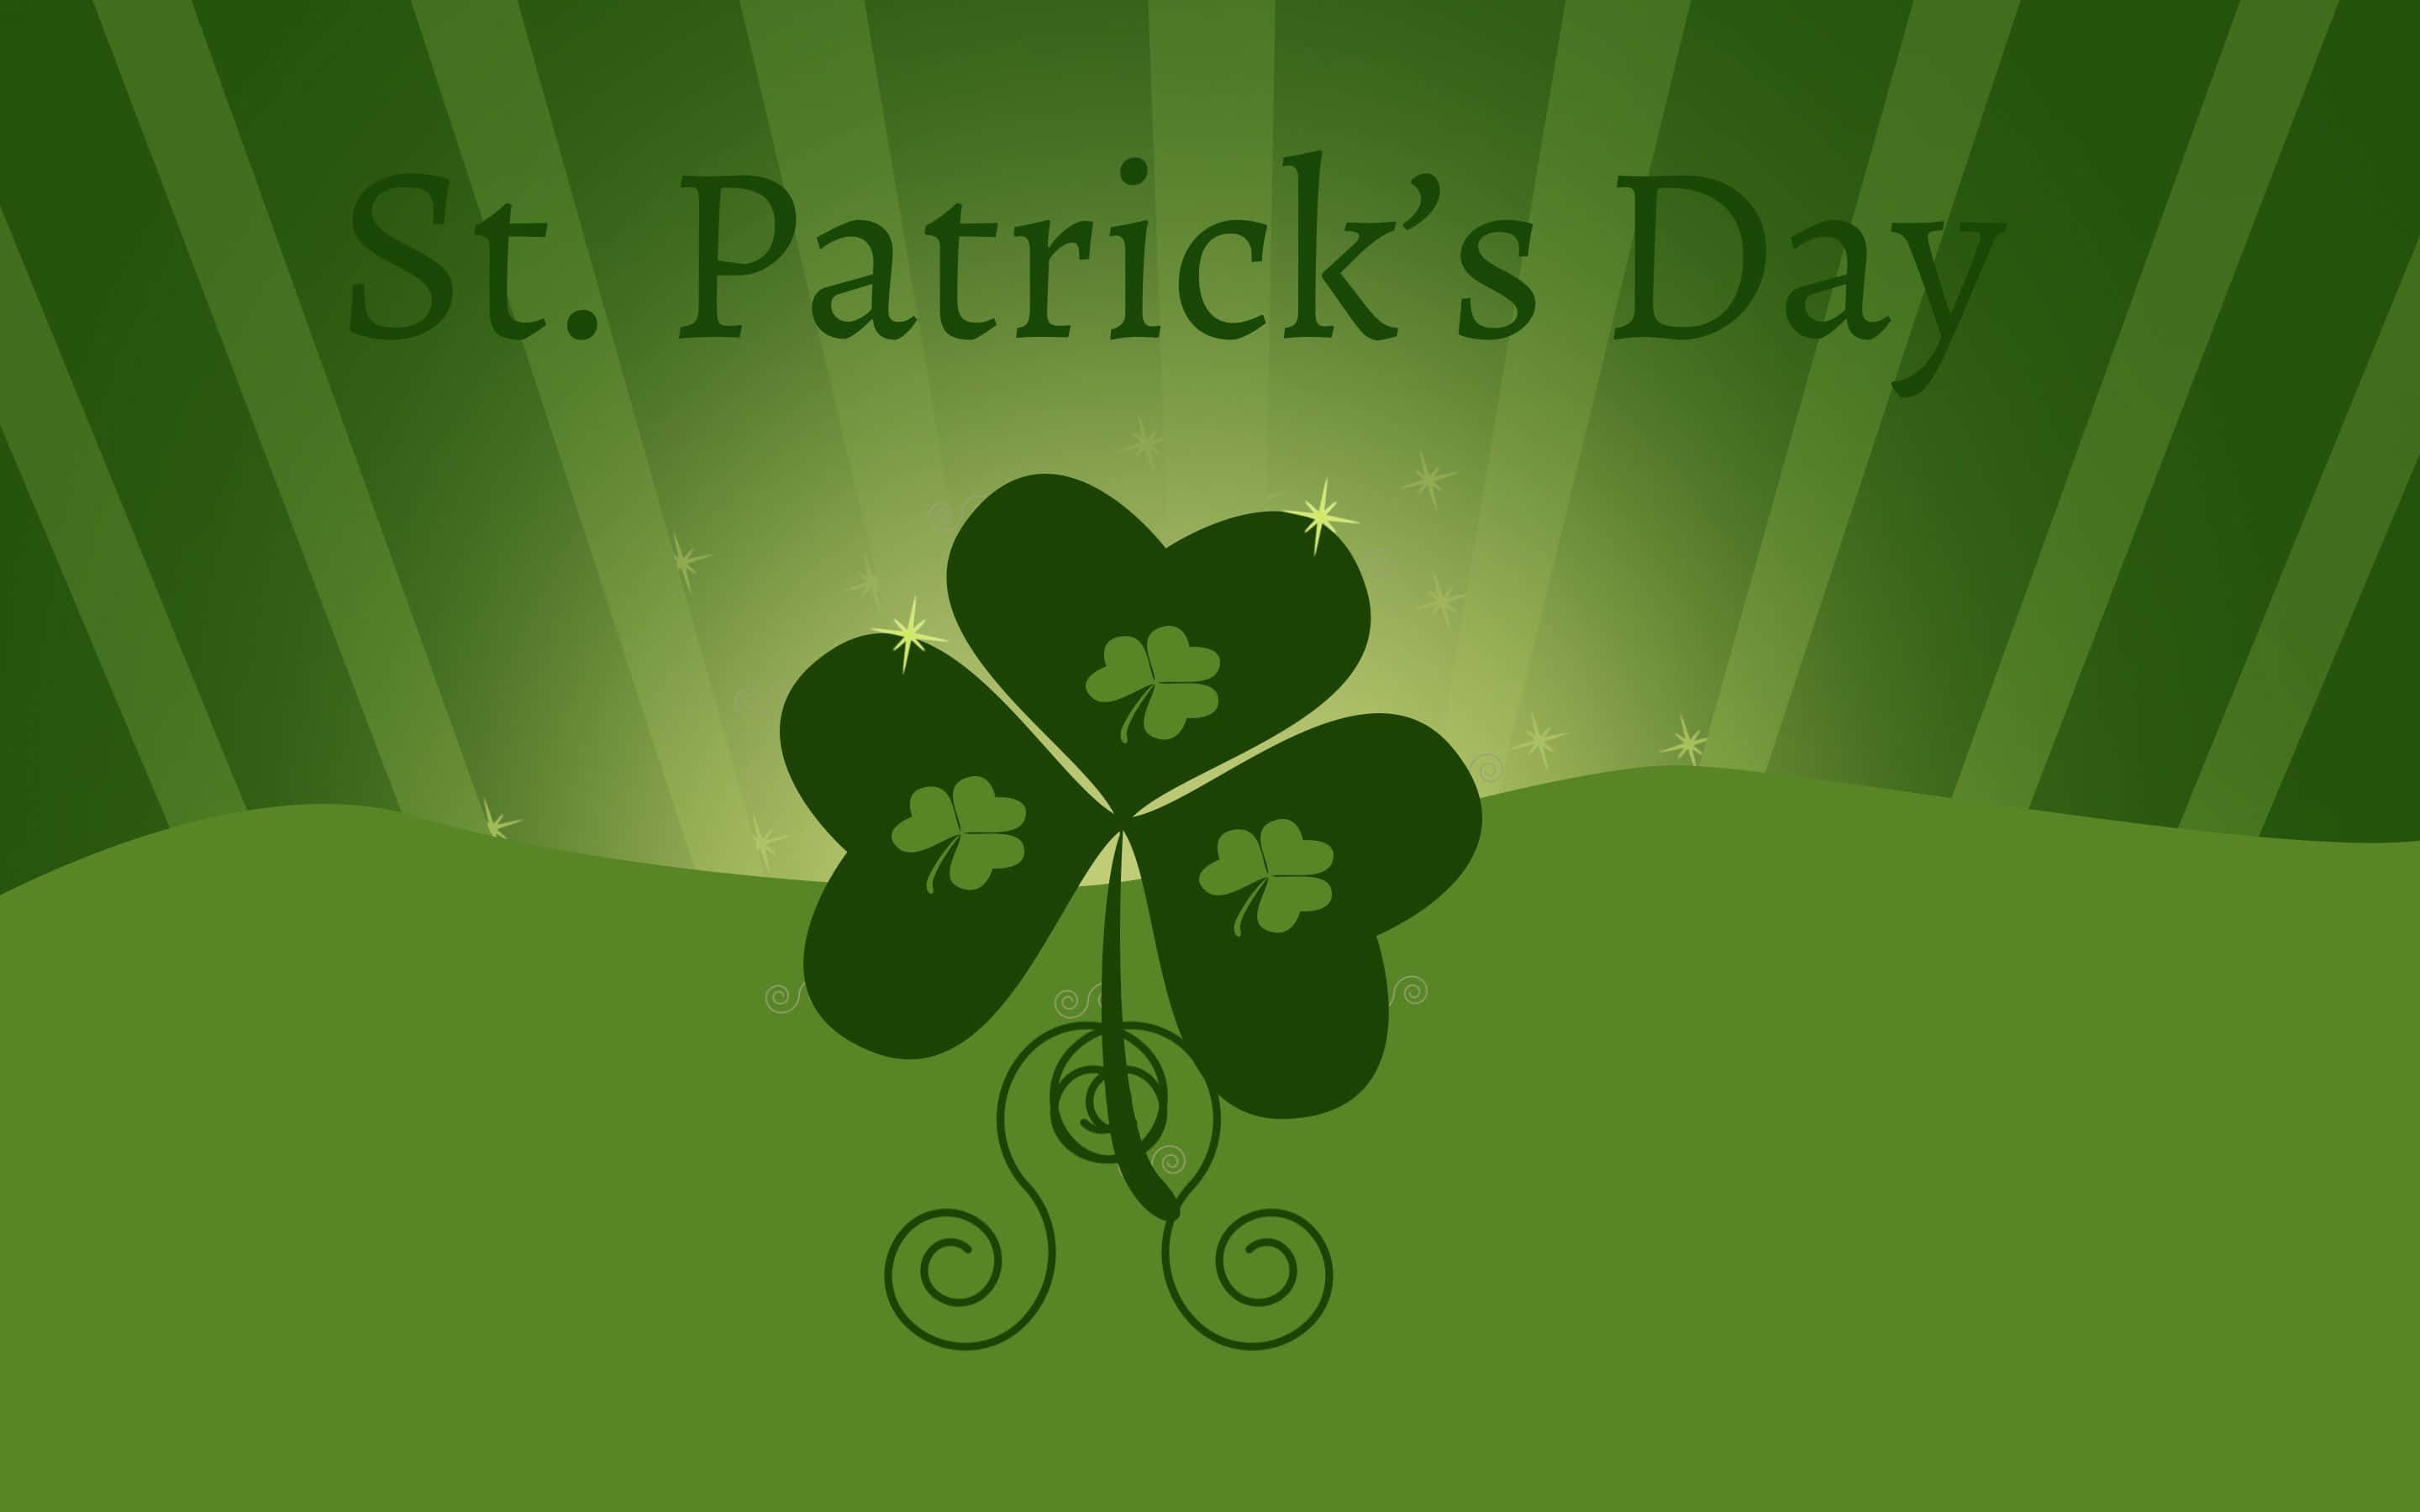 Celebrala Suerte De Los Irlandeses: Fondo De Pantalla Del Día De San Patricio